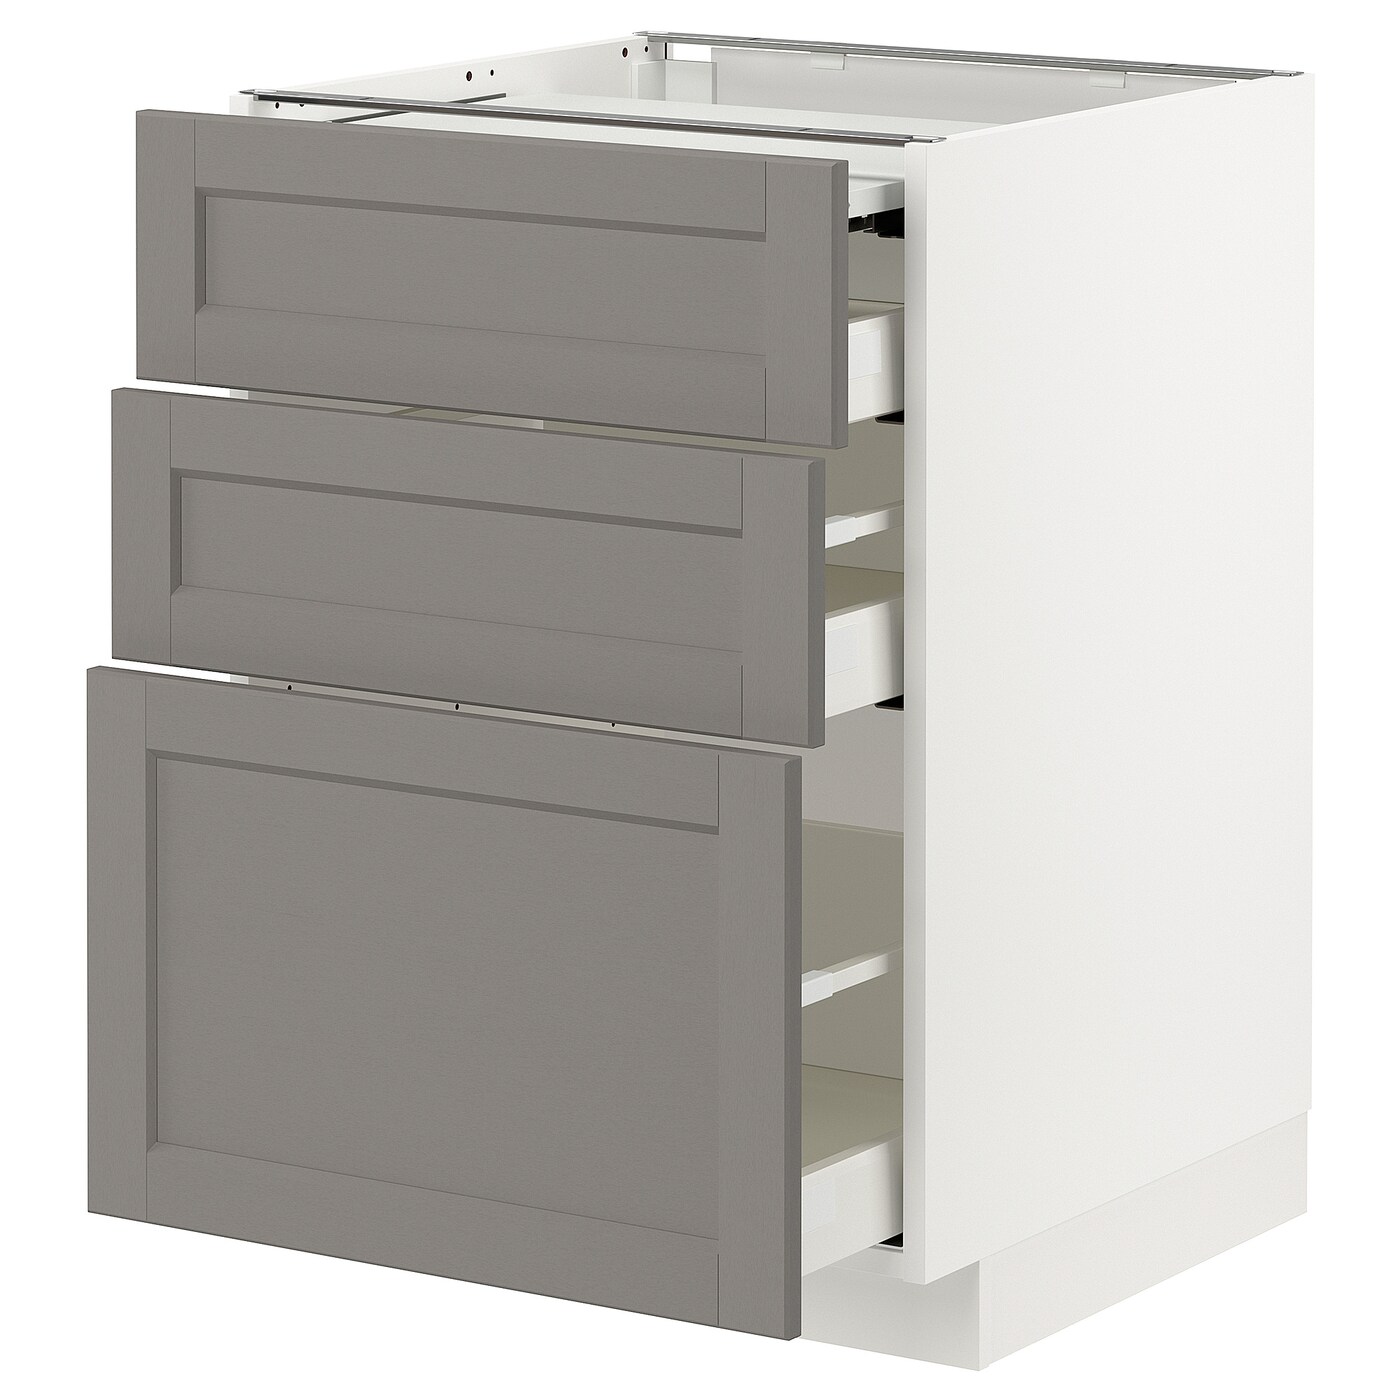 Напольный шкаф - METOD / MAXIMERA IKEA/ МЕТОД/ МАКСИМЕРА ИКЕА,  88х60 см, белый/серый